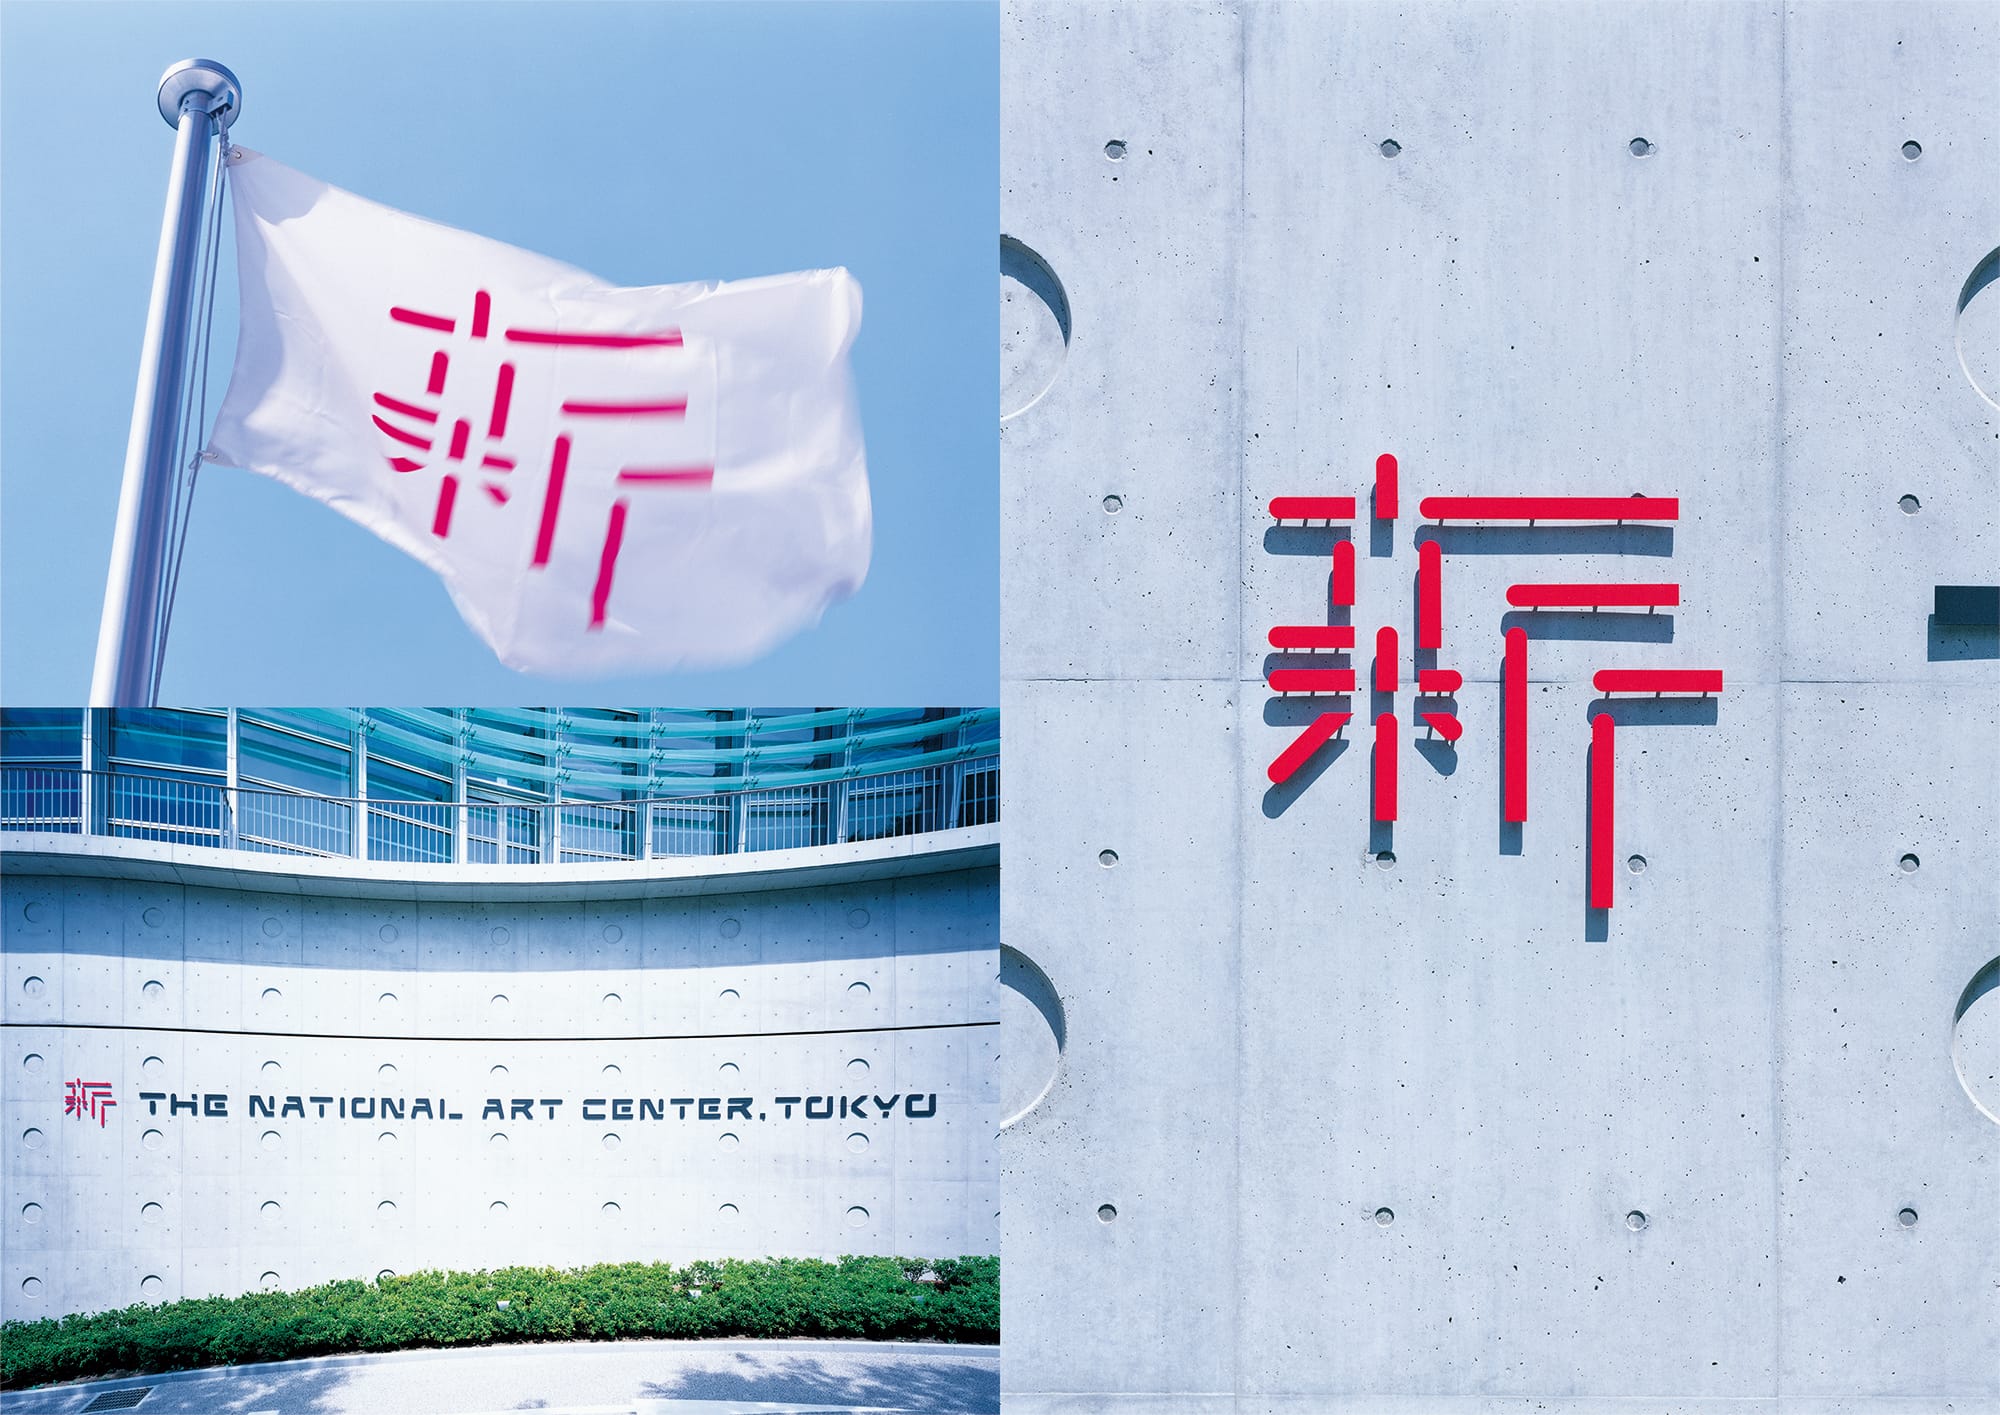 2007年、六本木に誕生した国立新美術館のロゴを手掛けた。「コレクションを持たない」「アートの情報センターとしての役割」など、従来の美術館にはない新規性に着目したことから「新」という漢字をシンボルマークに据えた。